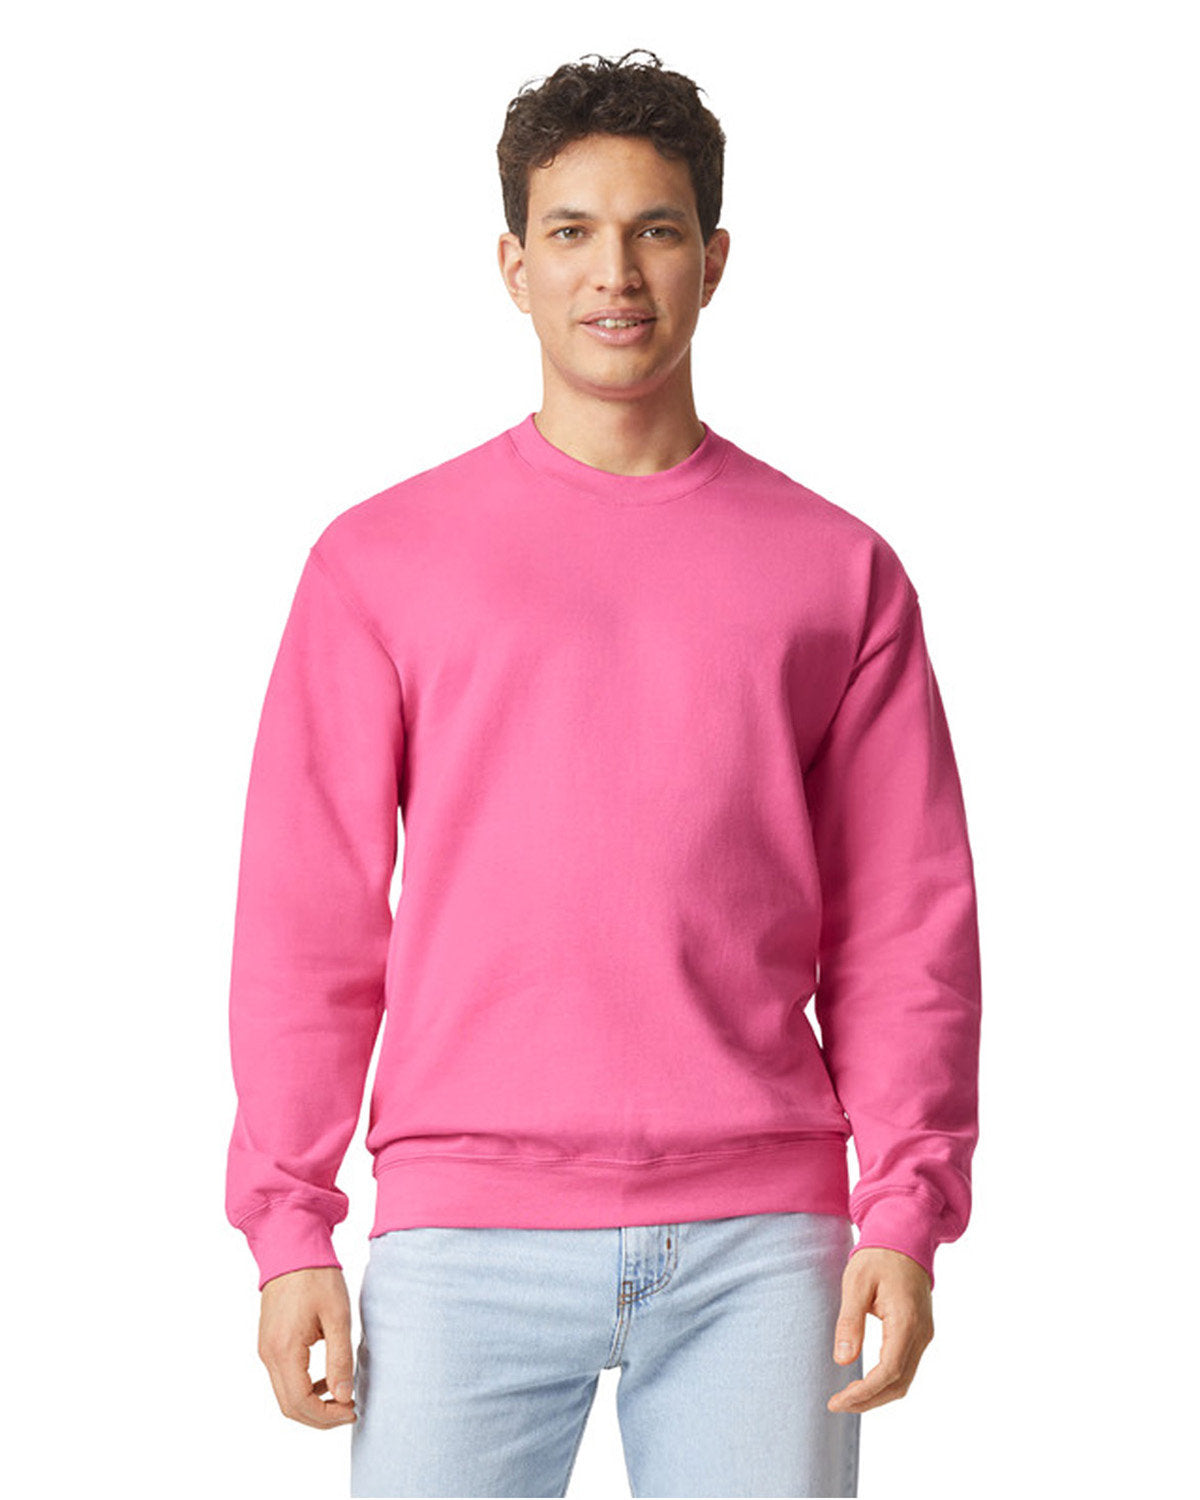 Limited Edition Custom Embroidered LOVE LIKE JESUS Sweatshirts